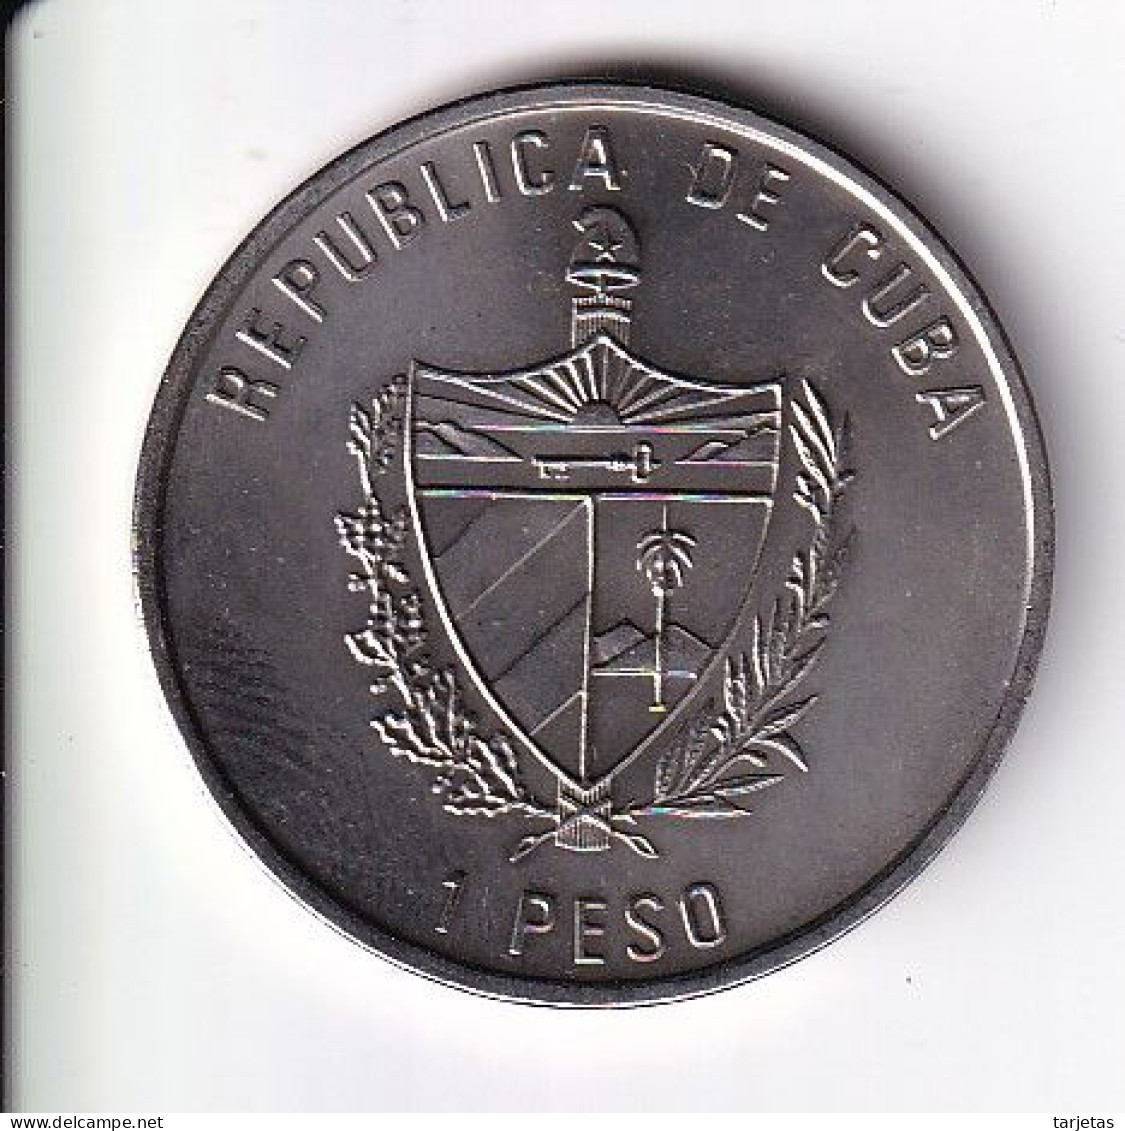 MONEDA DE CUBA DE 1 PESO DEL AÑO 1992 - AÑO DE ESPAÑA - PALAU SANT JORDI DE BARCELONA (NUEVA-UNC) - Cuba